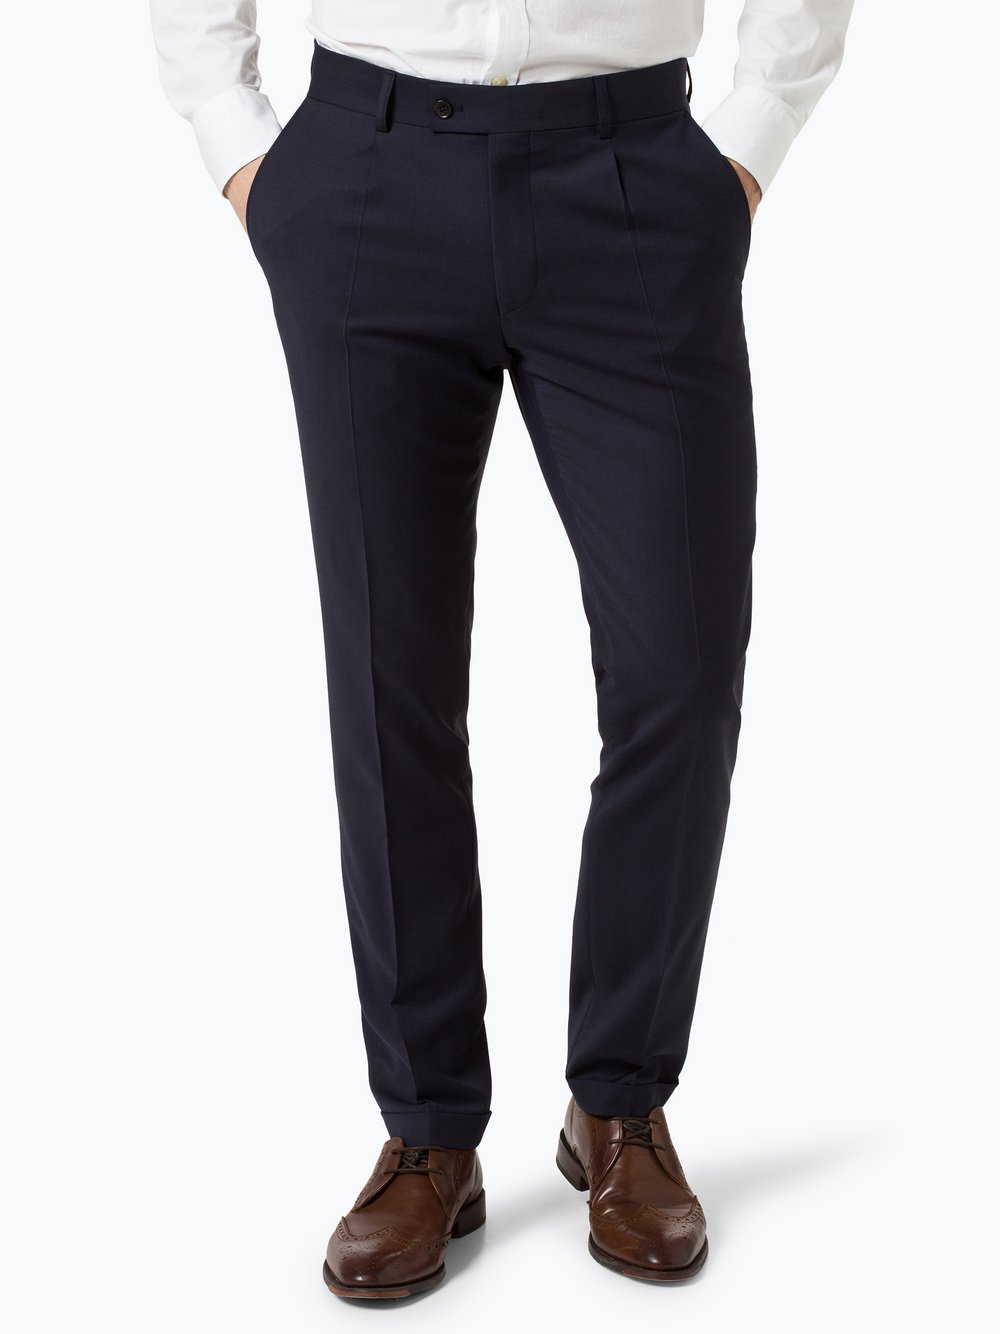 Finshley & Harding London - Męskie spodnie od garnituru modułowego – Garry, niebieski